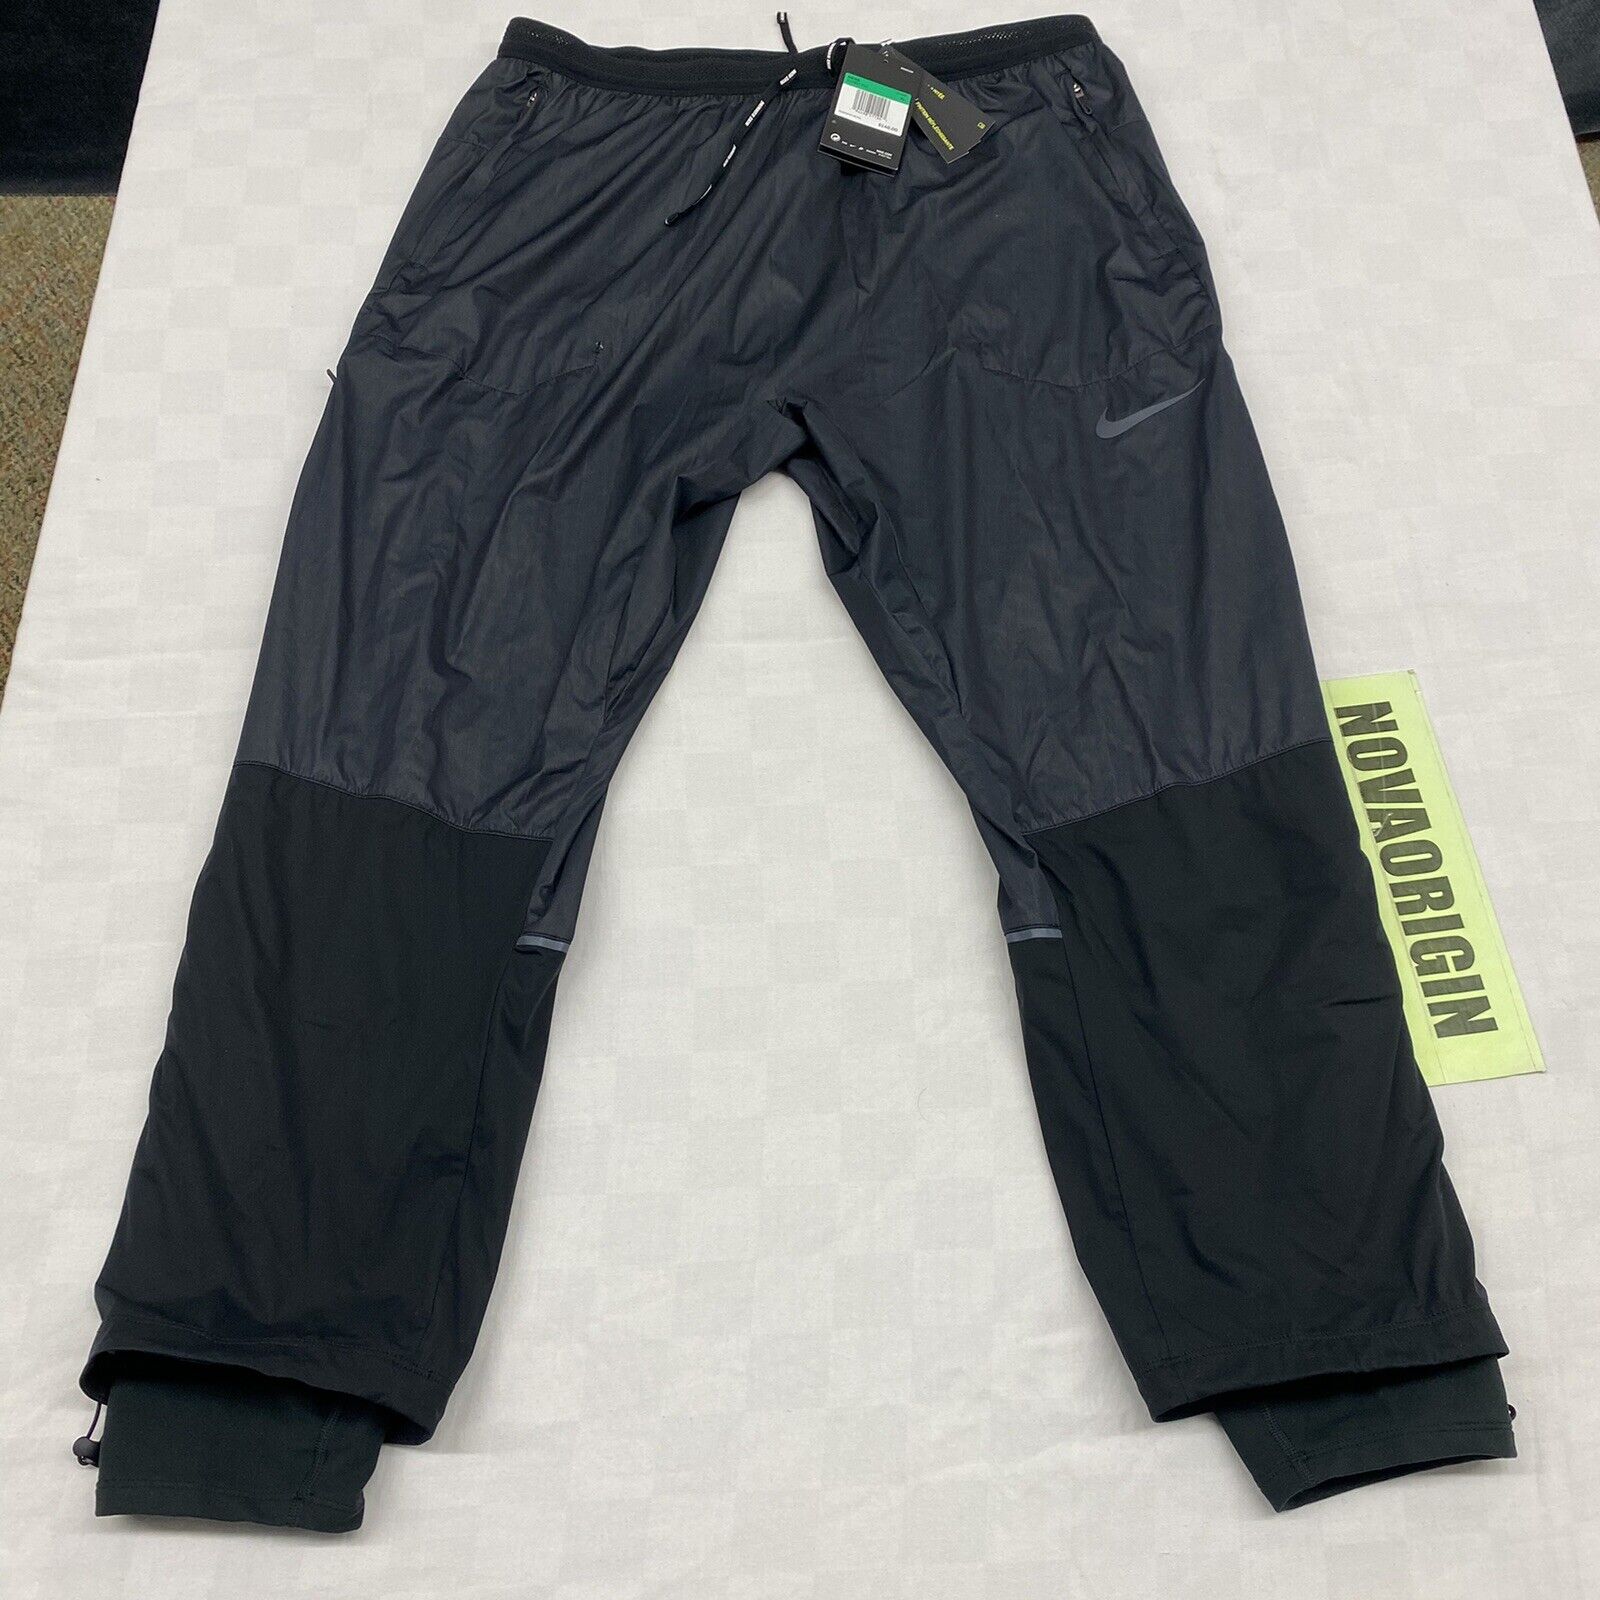 SIZE SMALL - Nike Swift Shield Slim Fit Running Pants Black CU7857